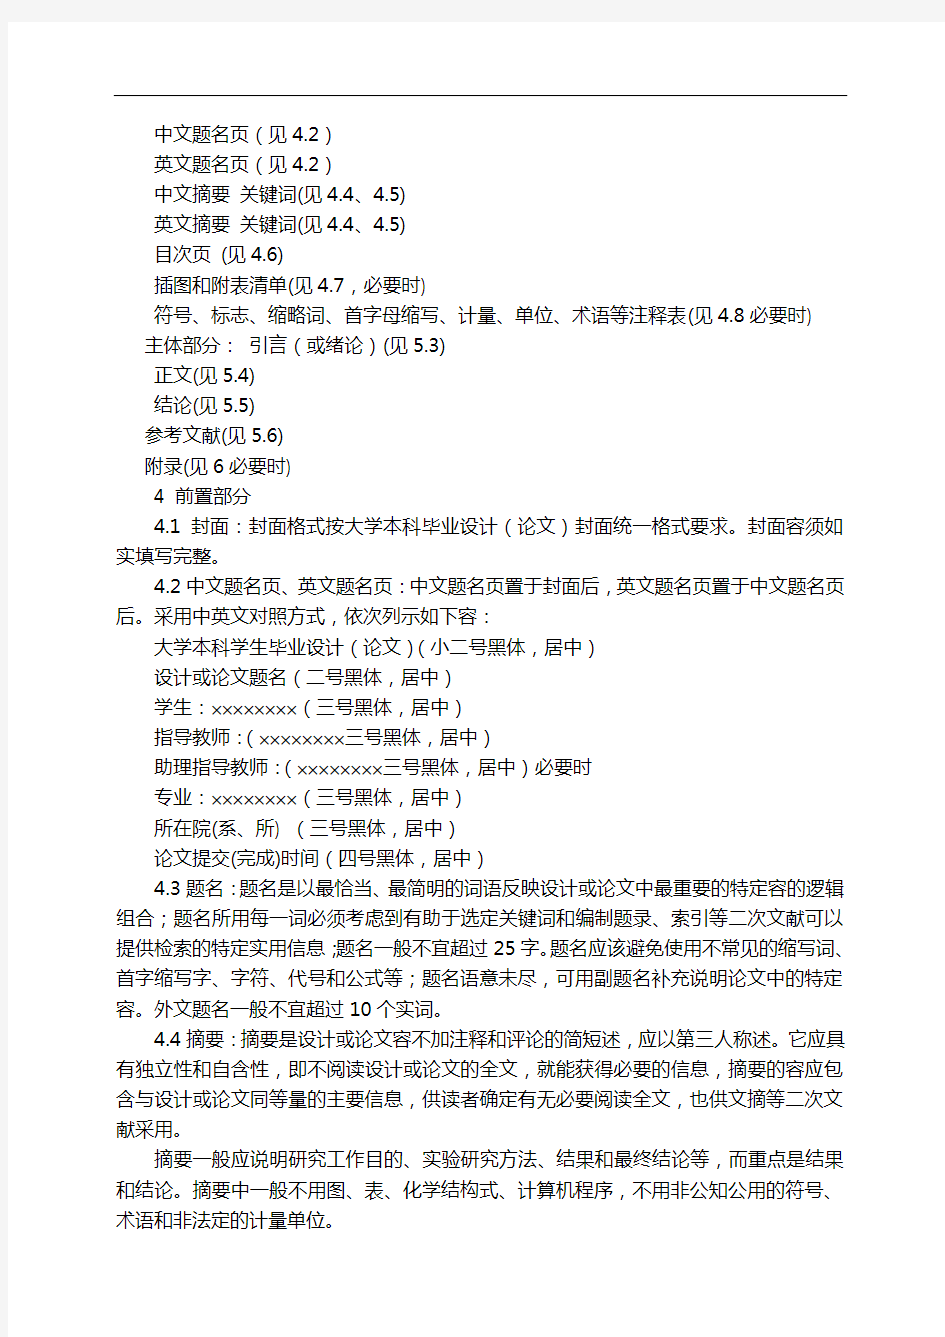 重庆大学本科毕业设计论文(论文)撰写规范方案化要求